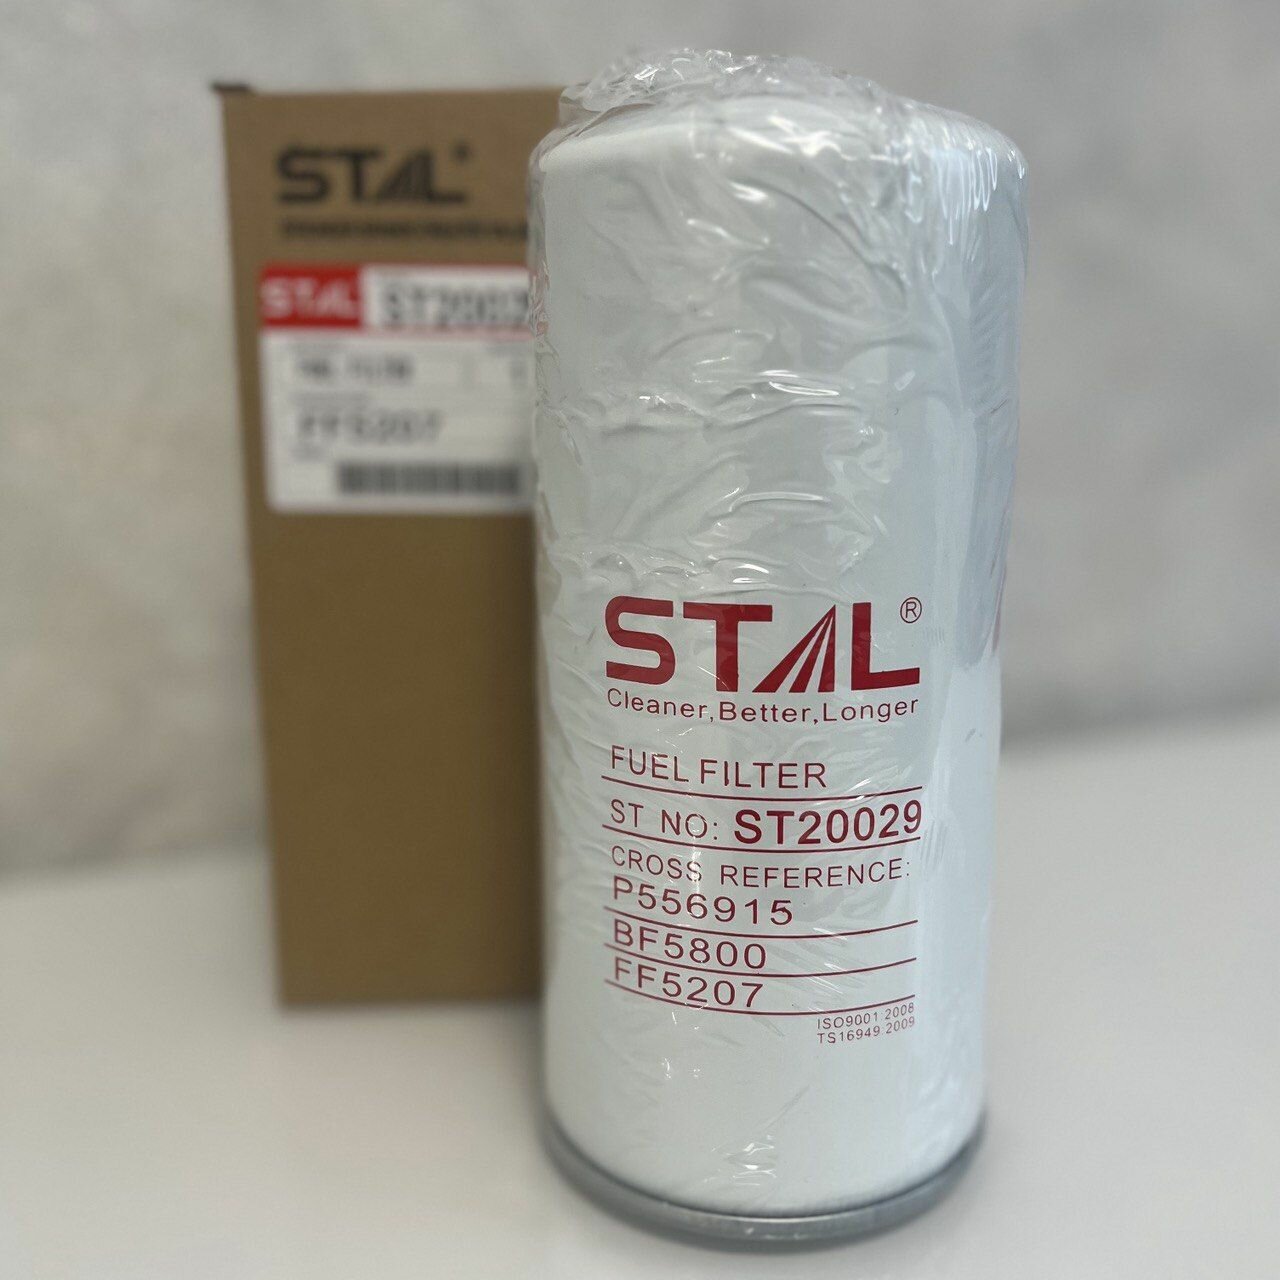 Топливный фильтр STAL ST20029 (P556915, P550915, FF5207 BF5800) для DETROIT, FREIGHTLINER, KENWORTH, PETERBILT